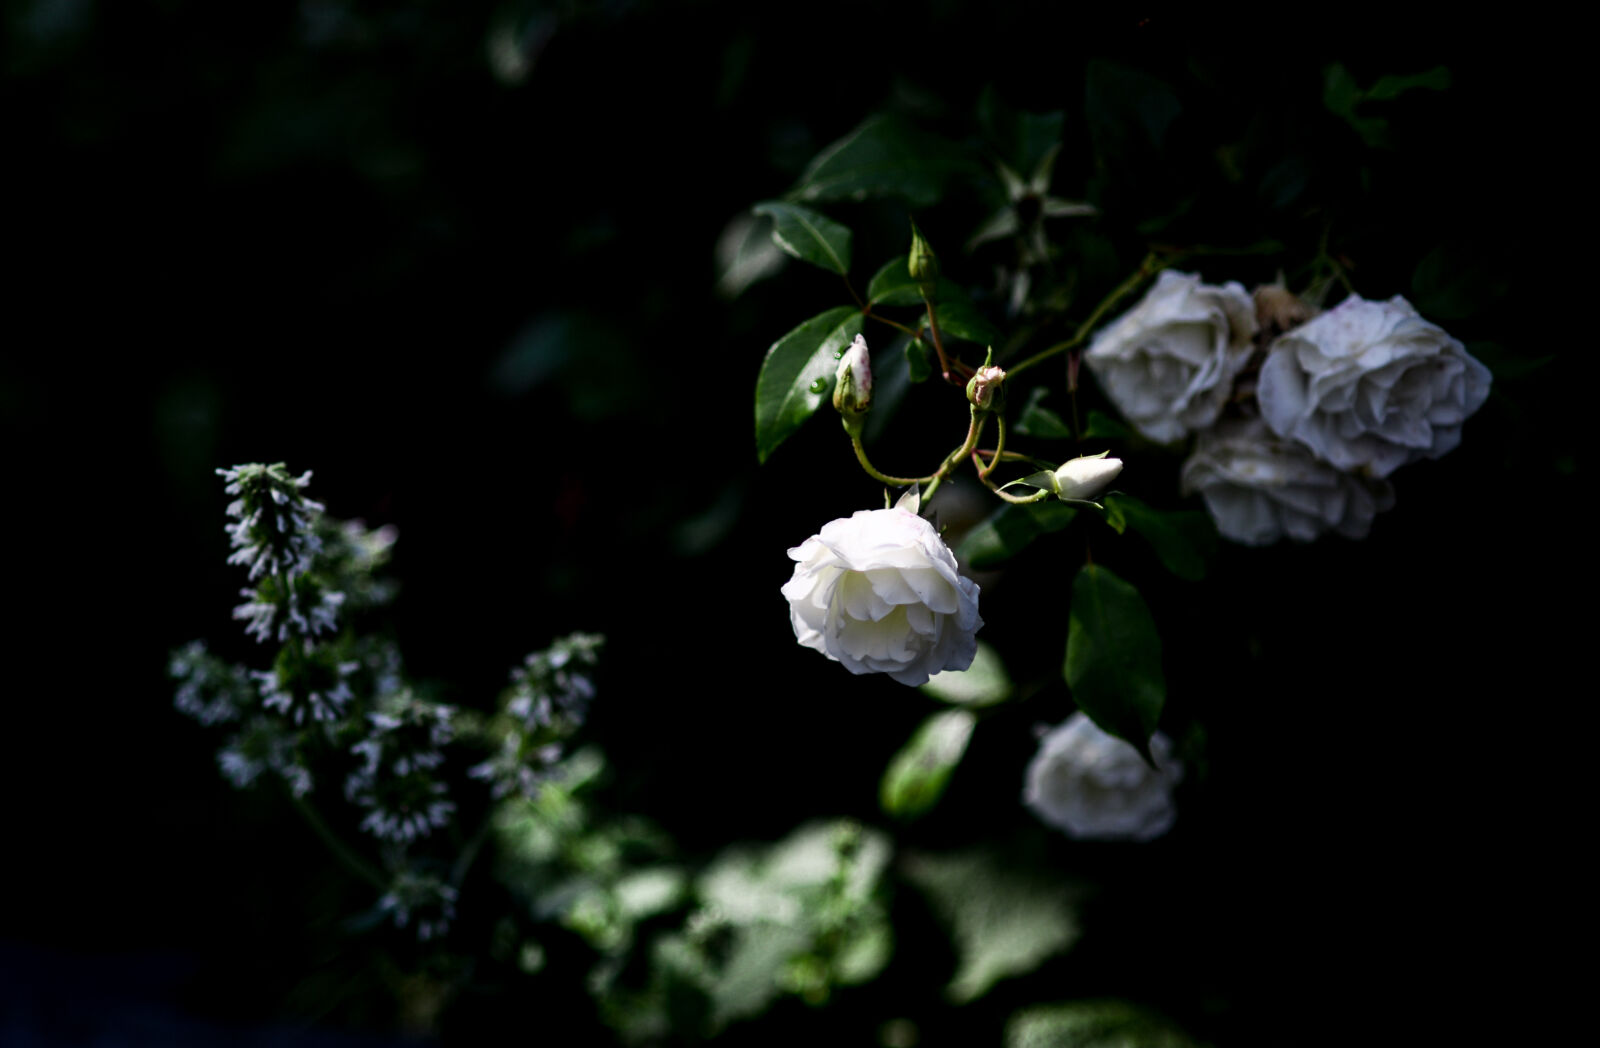 Nikon D610 + Nikon AF Nikkor 85mm F1.8D sample photo. Bloom, blossom, flower, nature photography